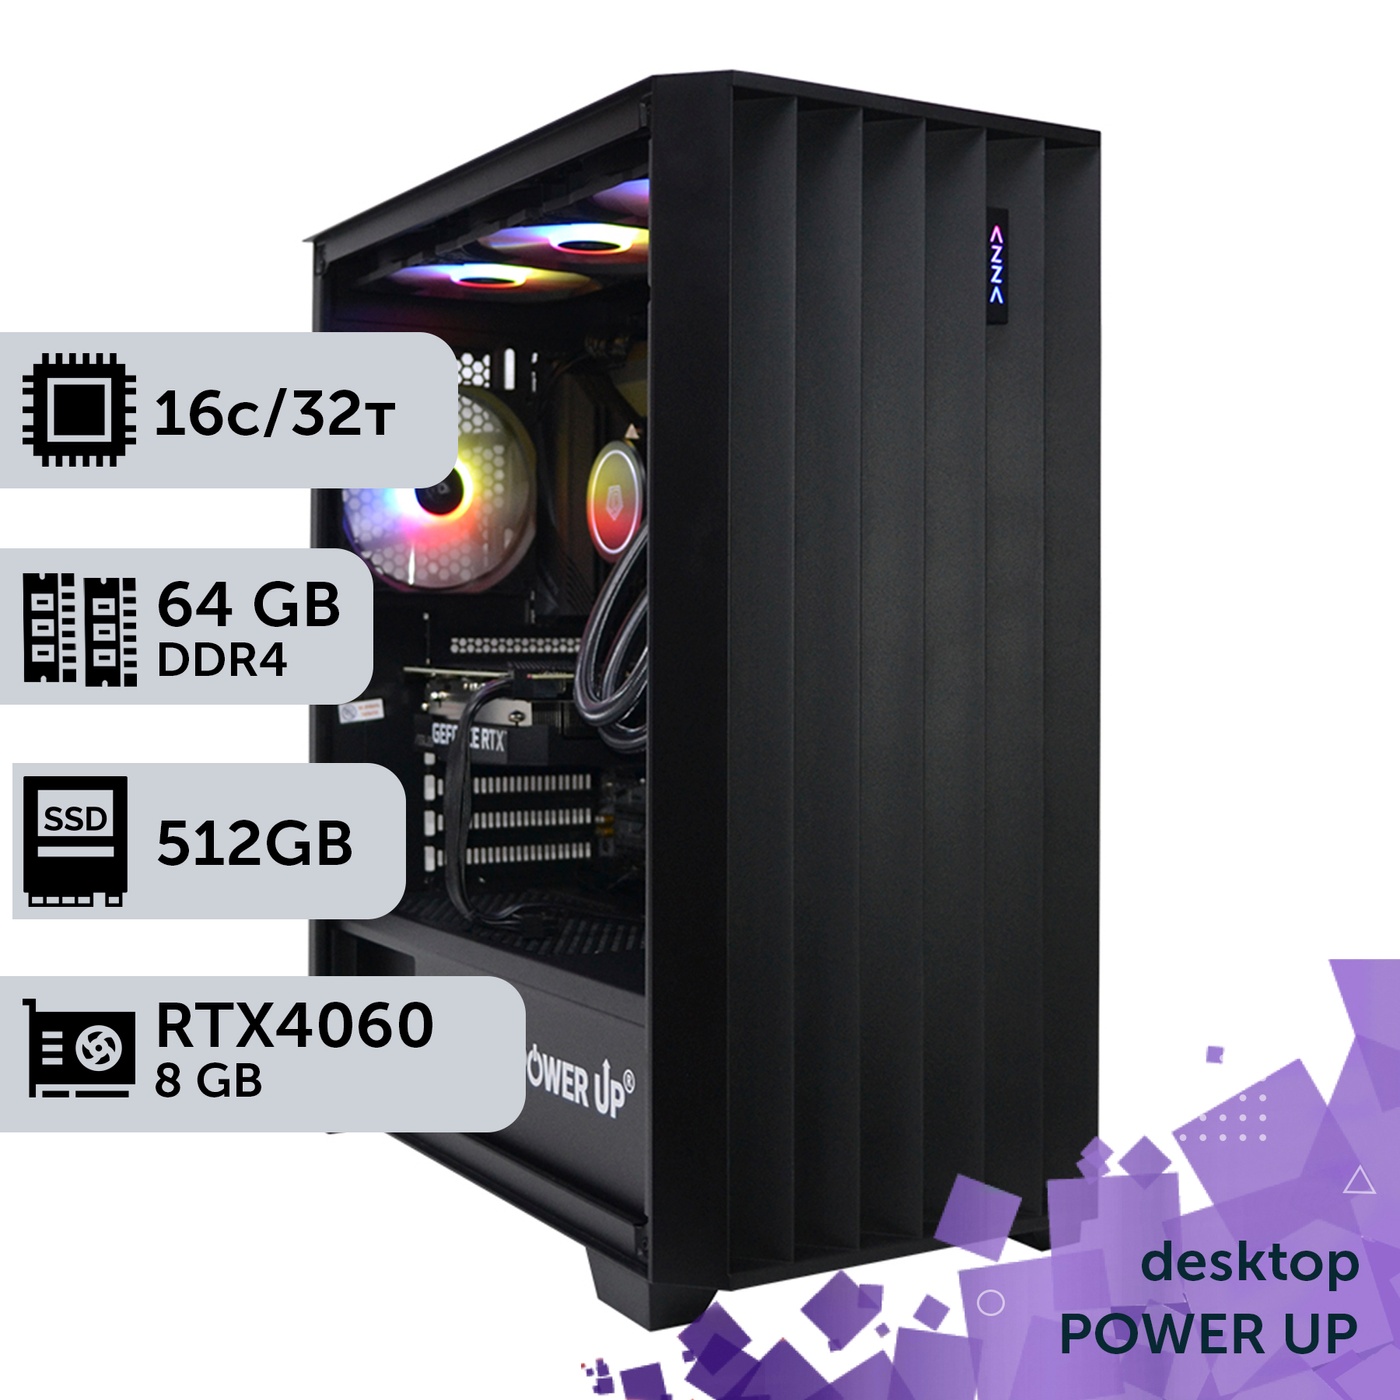 Рабочая станция PowerUp Desktop #262 Ryzen 9 5950x/64 GB/HDD 1 TB/SSD 512GB/GeForce RTX 4060 8GB